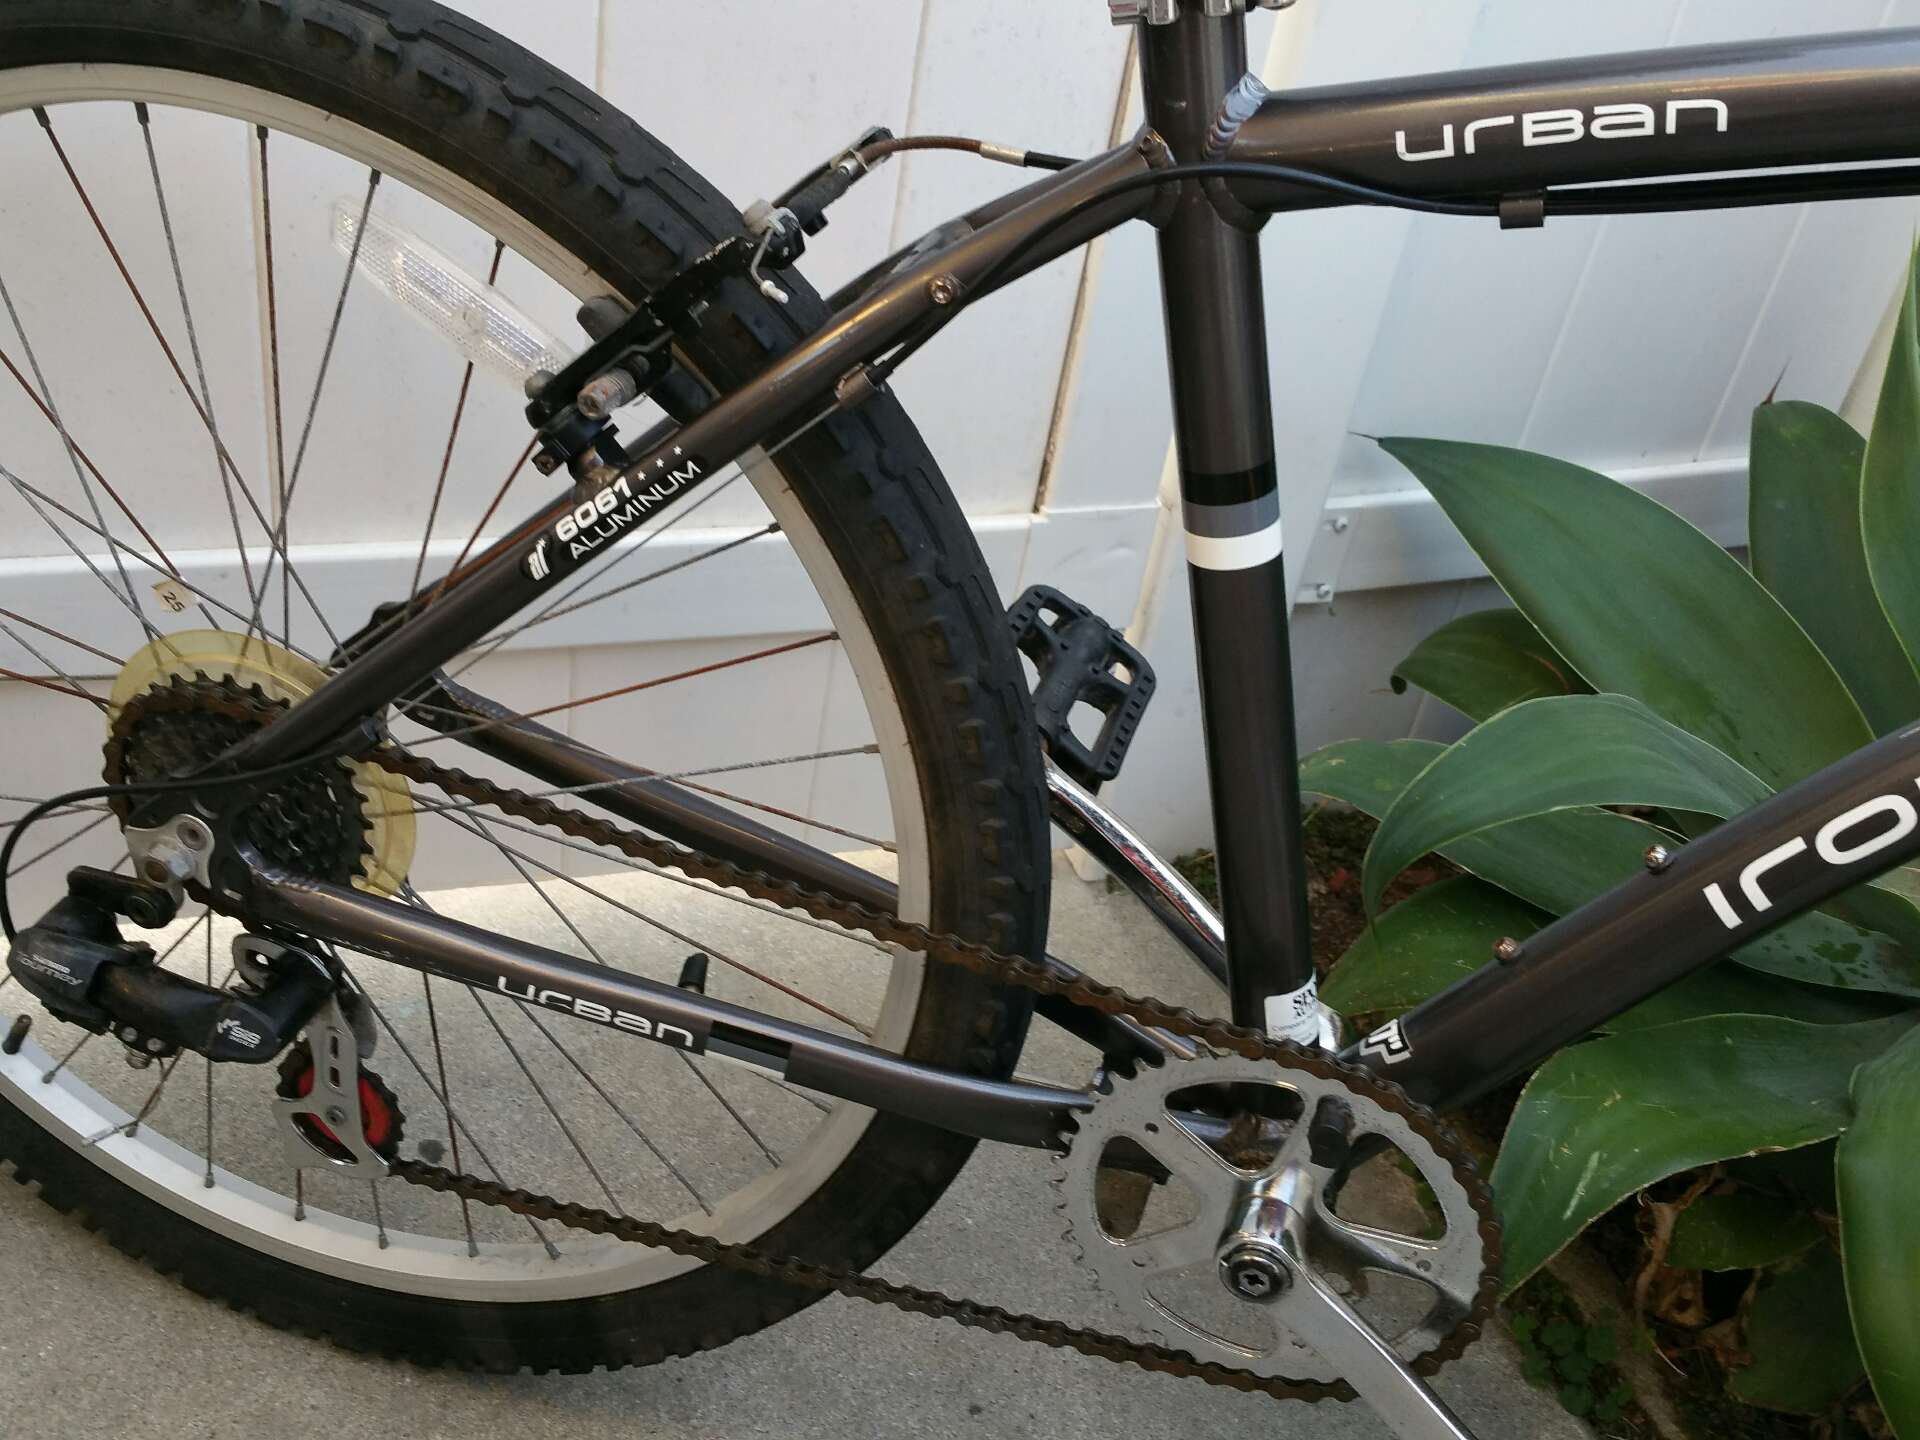 urban iron horse bike